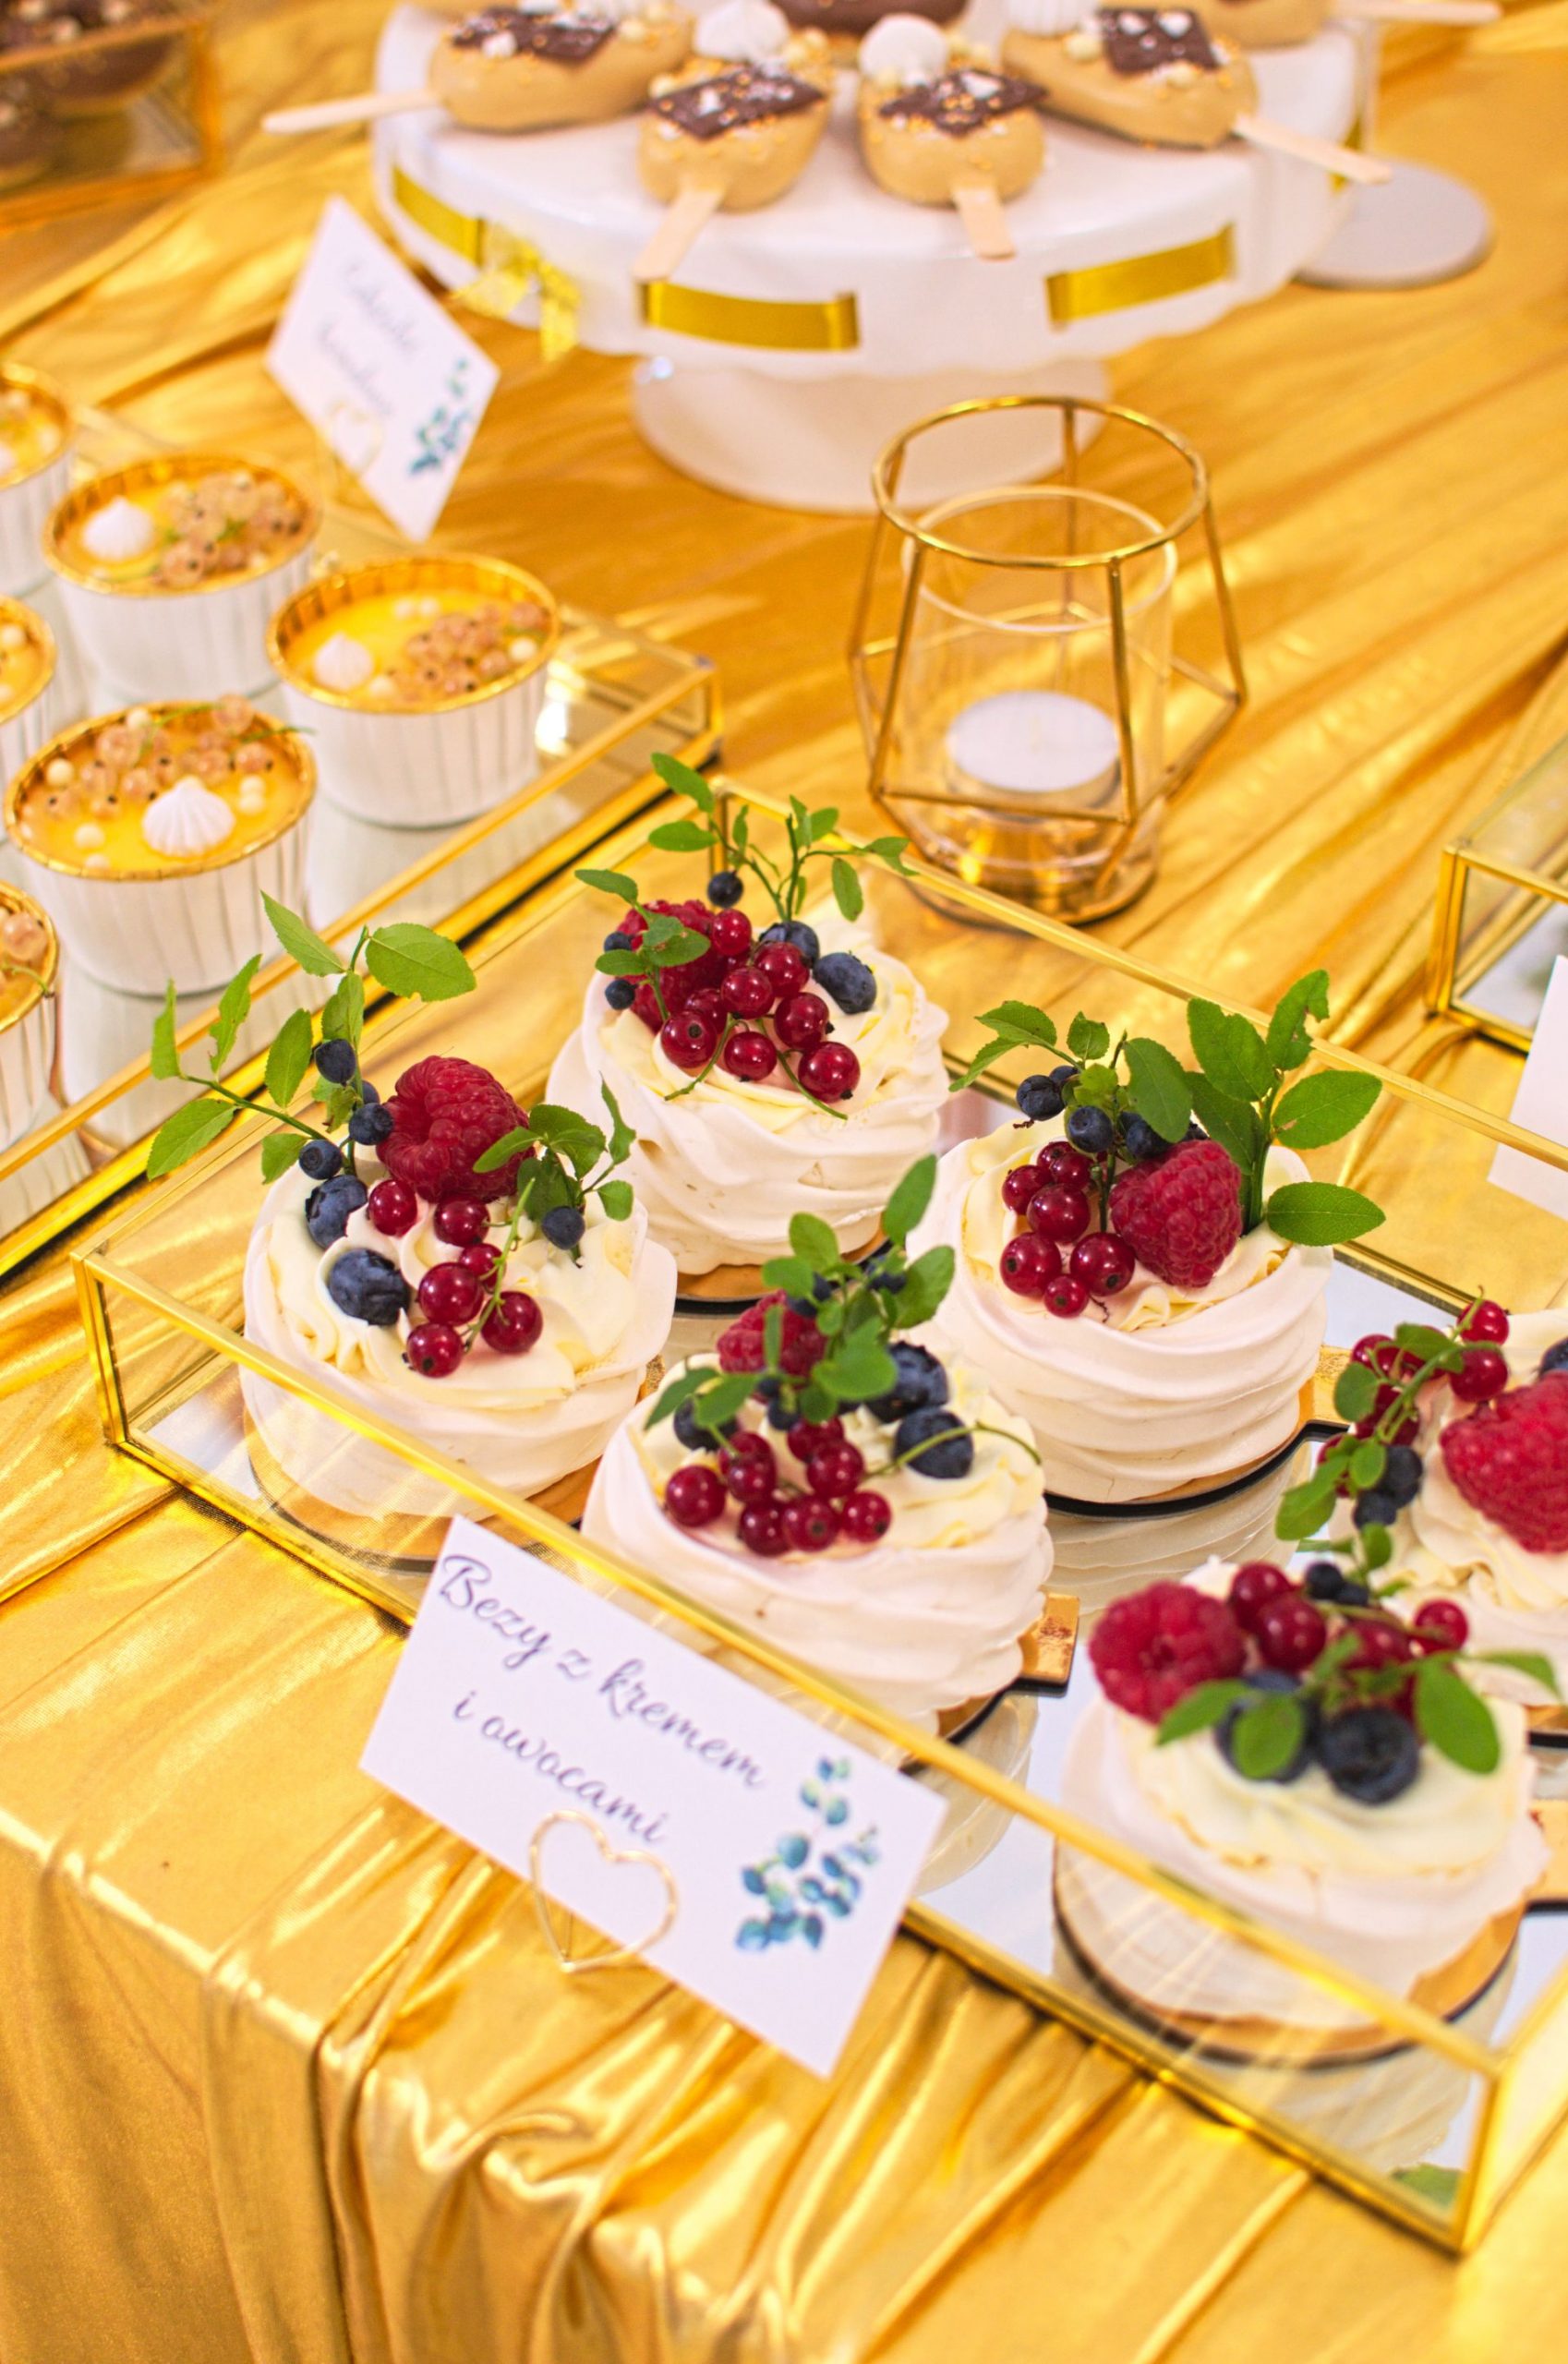 Słodki stół przygotowany na wesele Karoliny i Krystiana